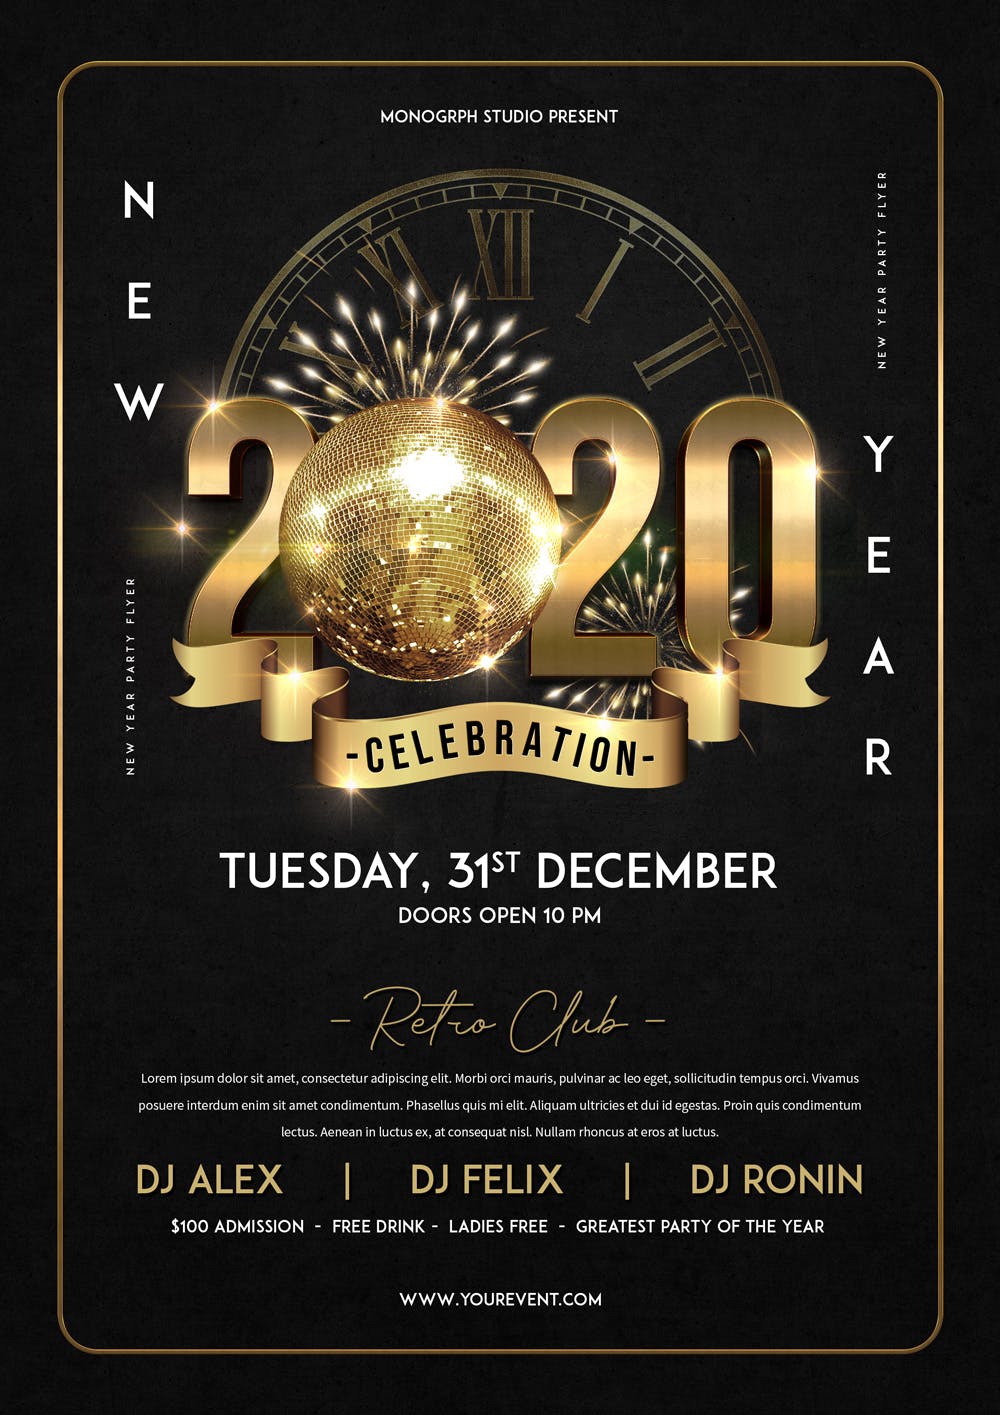 酒吧夜场2020年倒计时特别活动海报传单第一素材精选PSD模板 New Year Party Flyer插图(1)